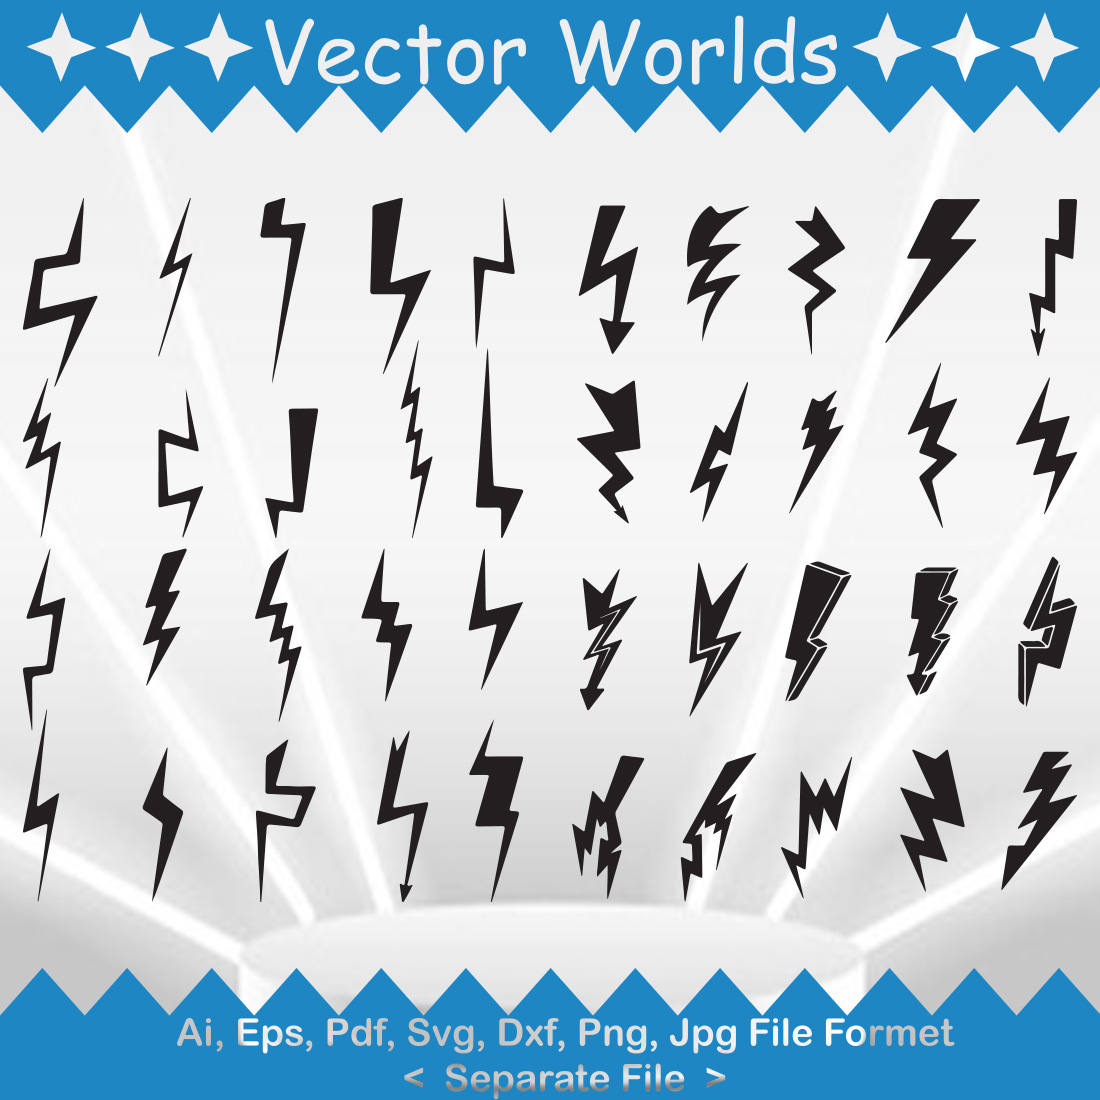 Lightning Bolt SVG Vector Design cover image.